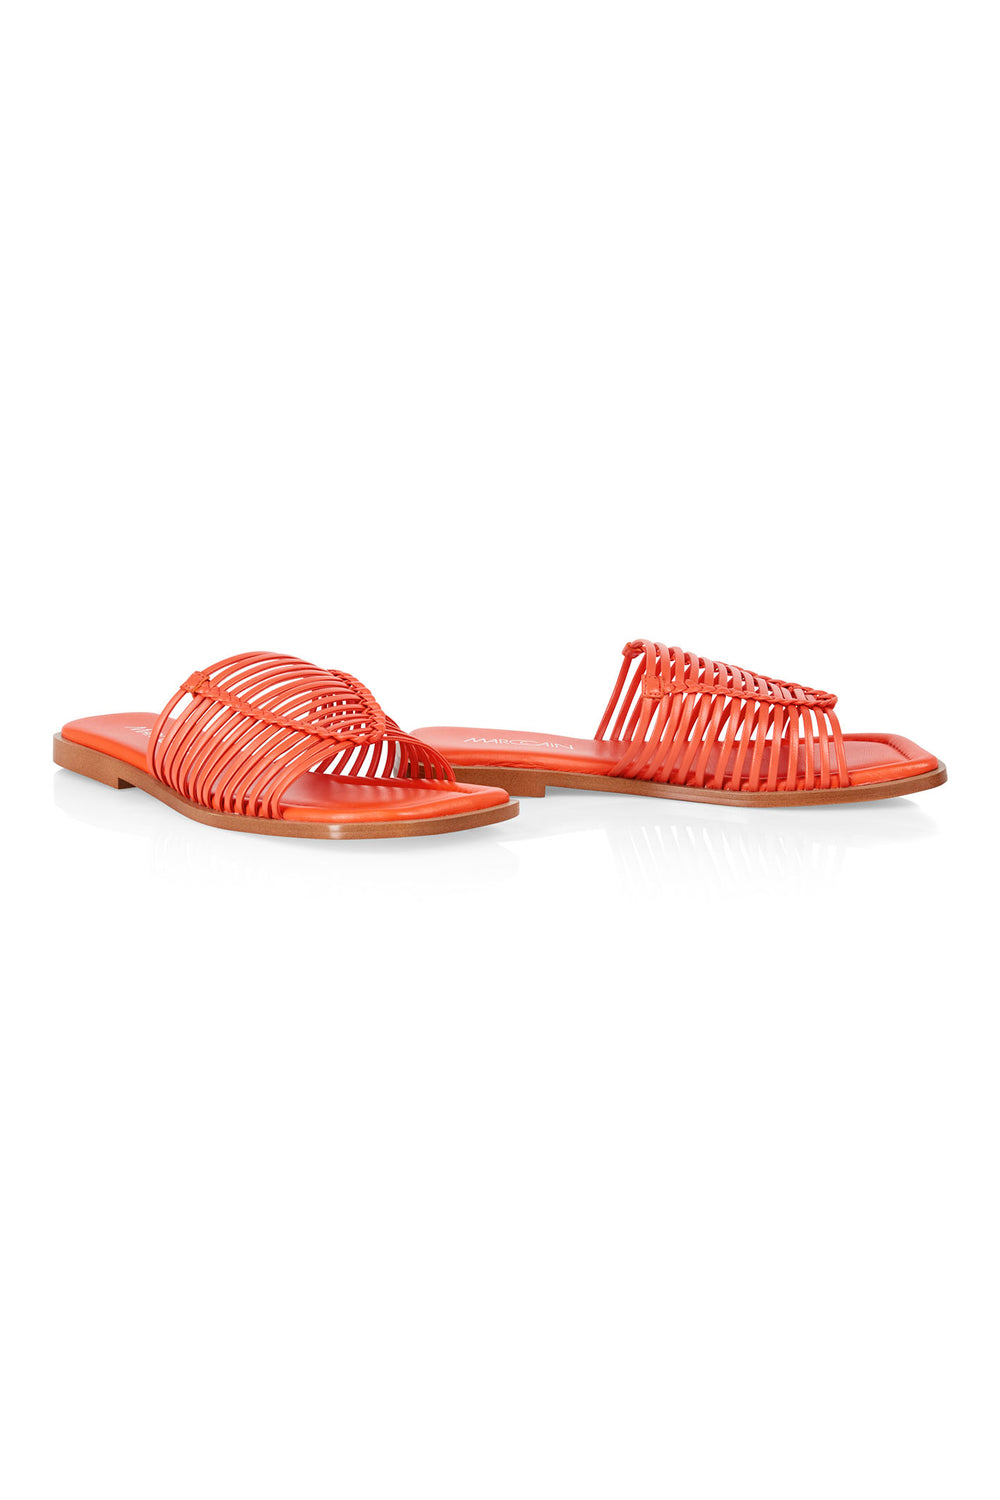 Marc Cain WB SG.12 L20 223 Bright Tomato Orange Slider Sandals - Olivia Grace Fashion